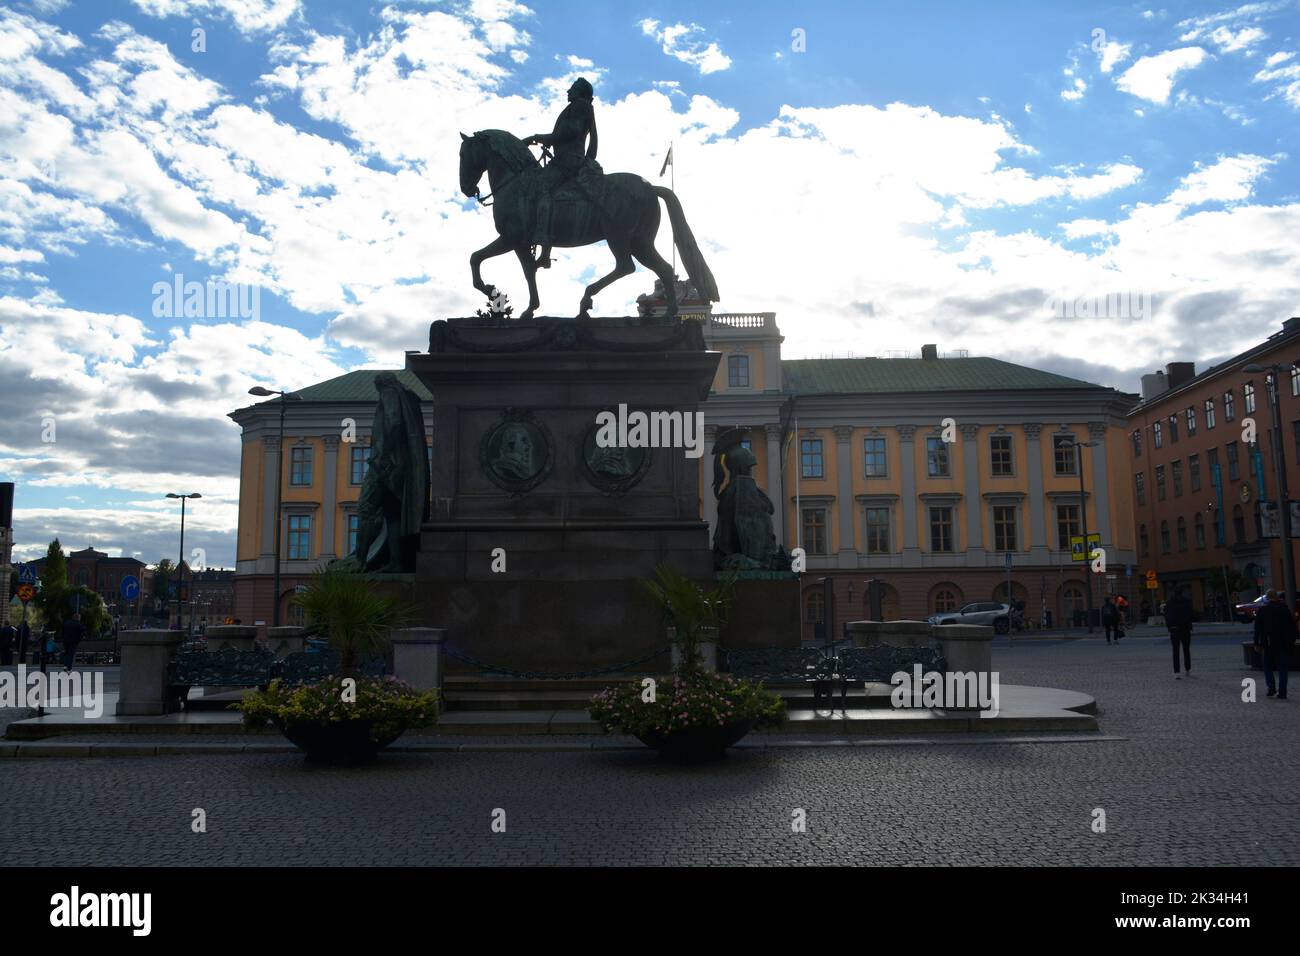 Stockholm, Schweden, September 2022: Reiterstatue des Königs Gustavus Adolphus, auch bekannt als Adolf Gustav II., auf dem Gustav Adolfs Torg Platz. Stockfoto